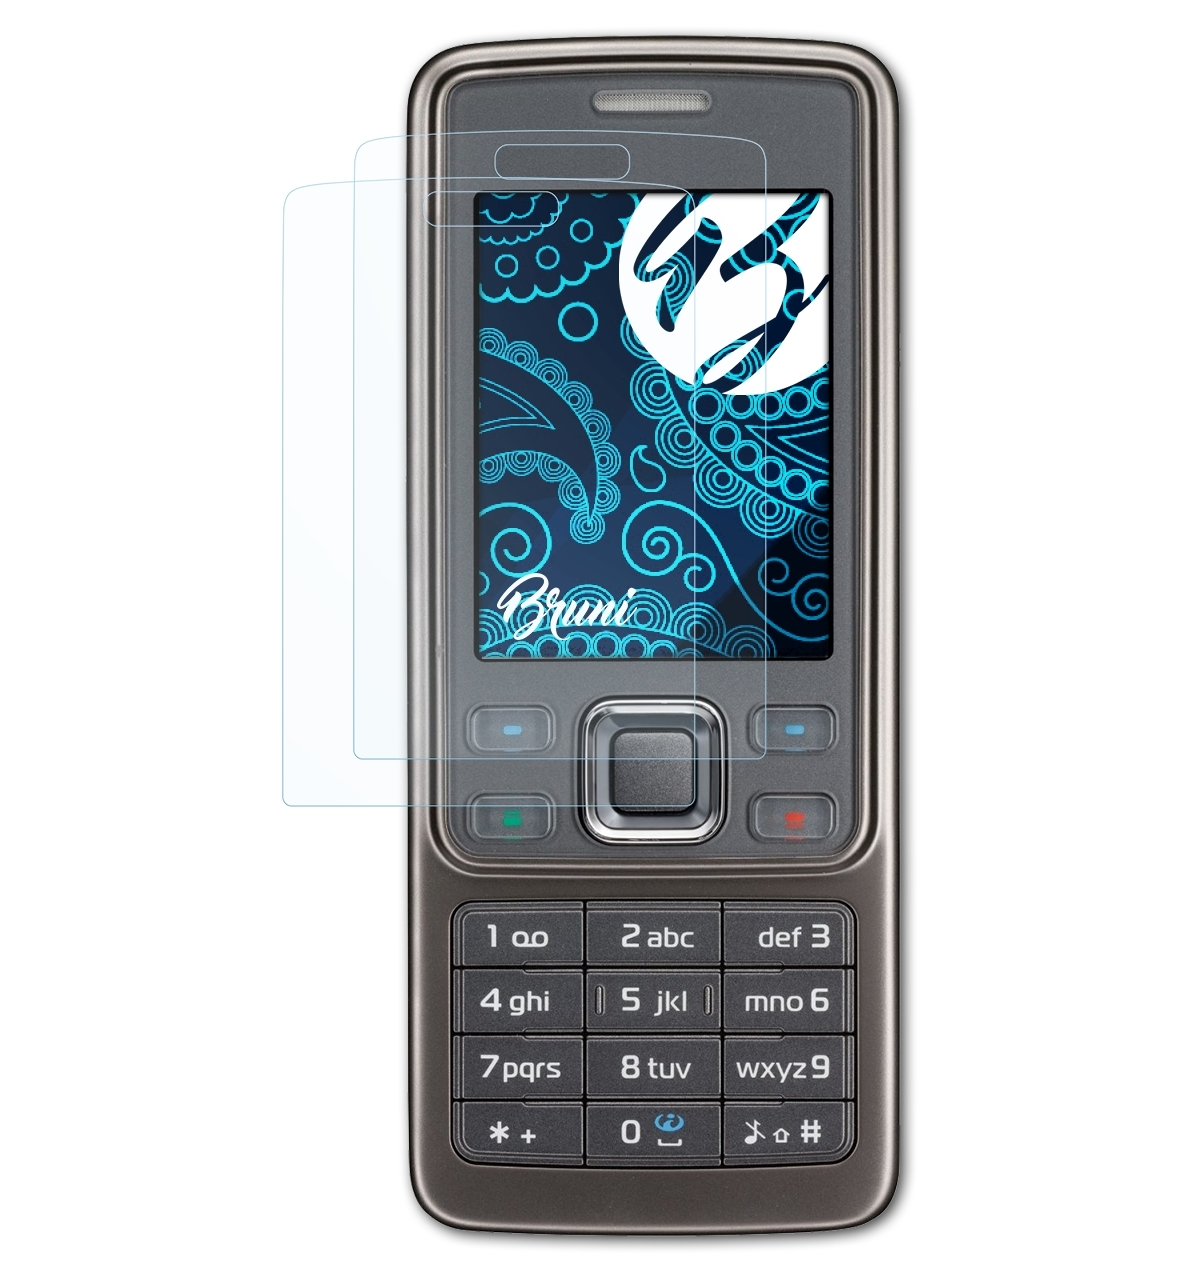 BRUNI Schutzfolie(für Basics-Clear 6300i) 2x Nokia